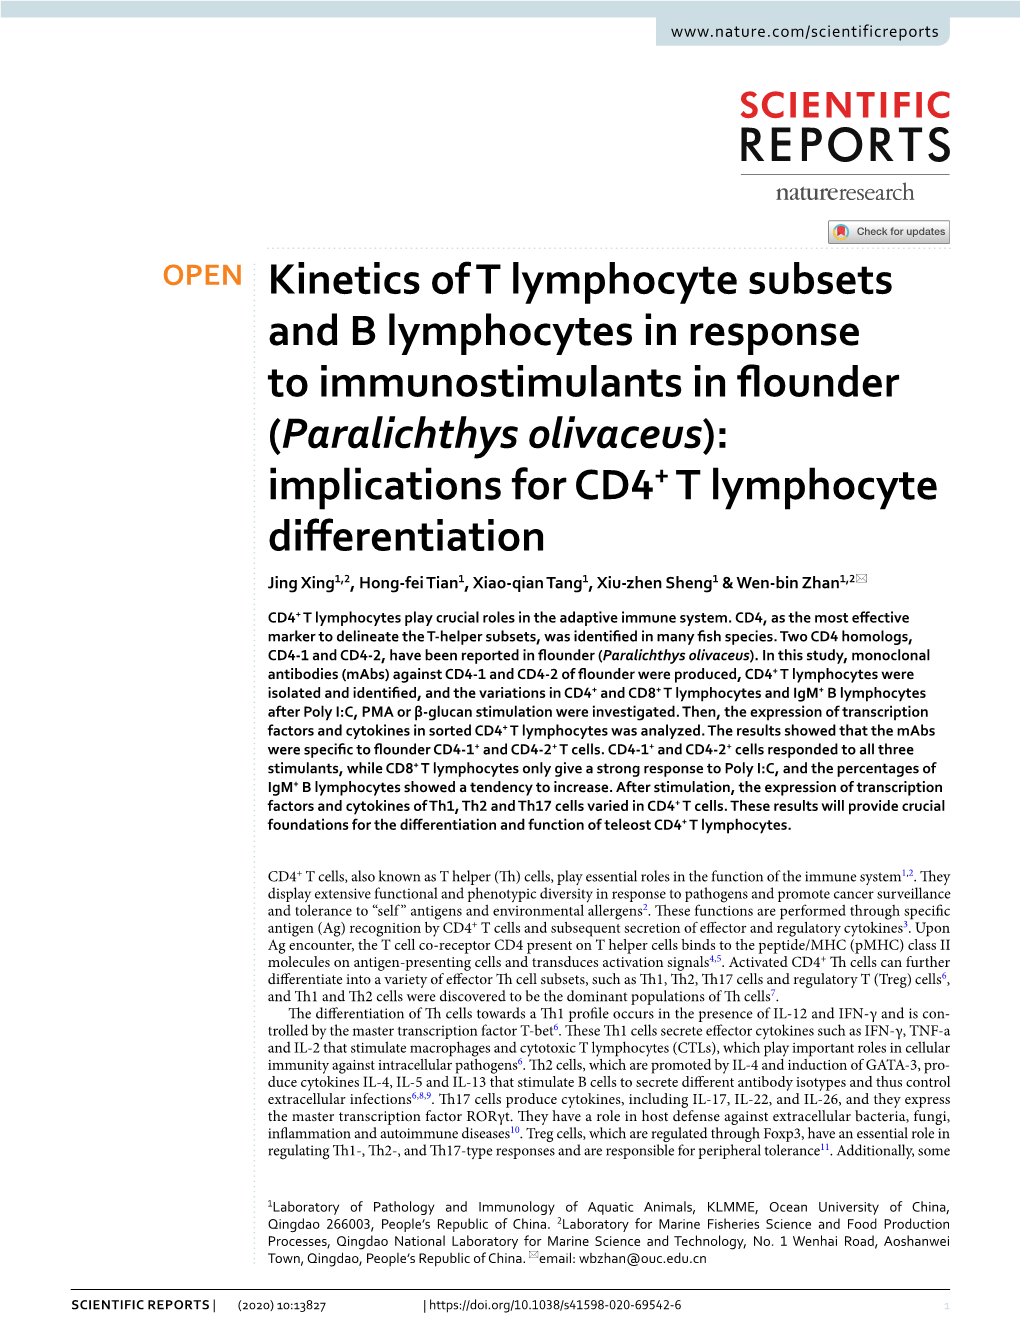 Paralichthys Olivaceus): Implications for ­CD4+ T Lymphocyte Diferentiation Jing Xing1,2, Hong‑Fei Tian1, Xiao‑Qian Tang1, Xiu‑Zhen Sheng1 & Wen‑Bin Zhan1,2*